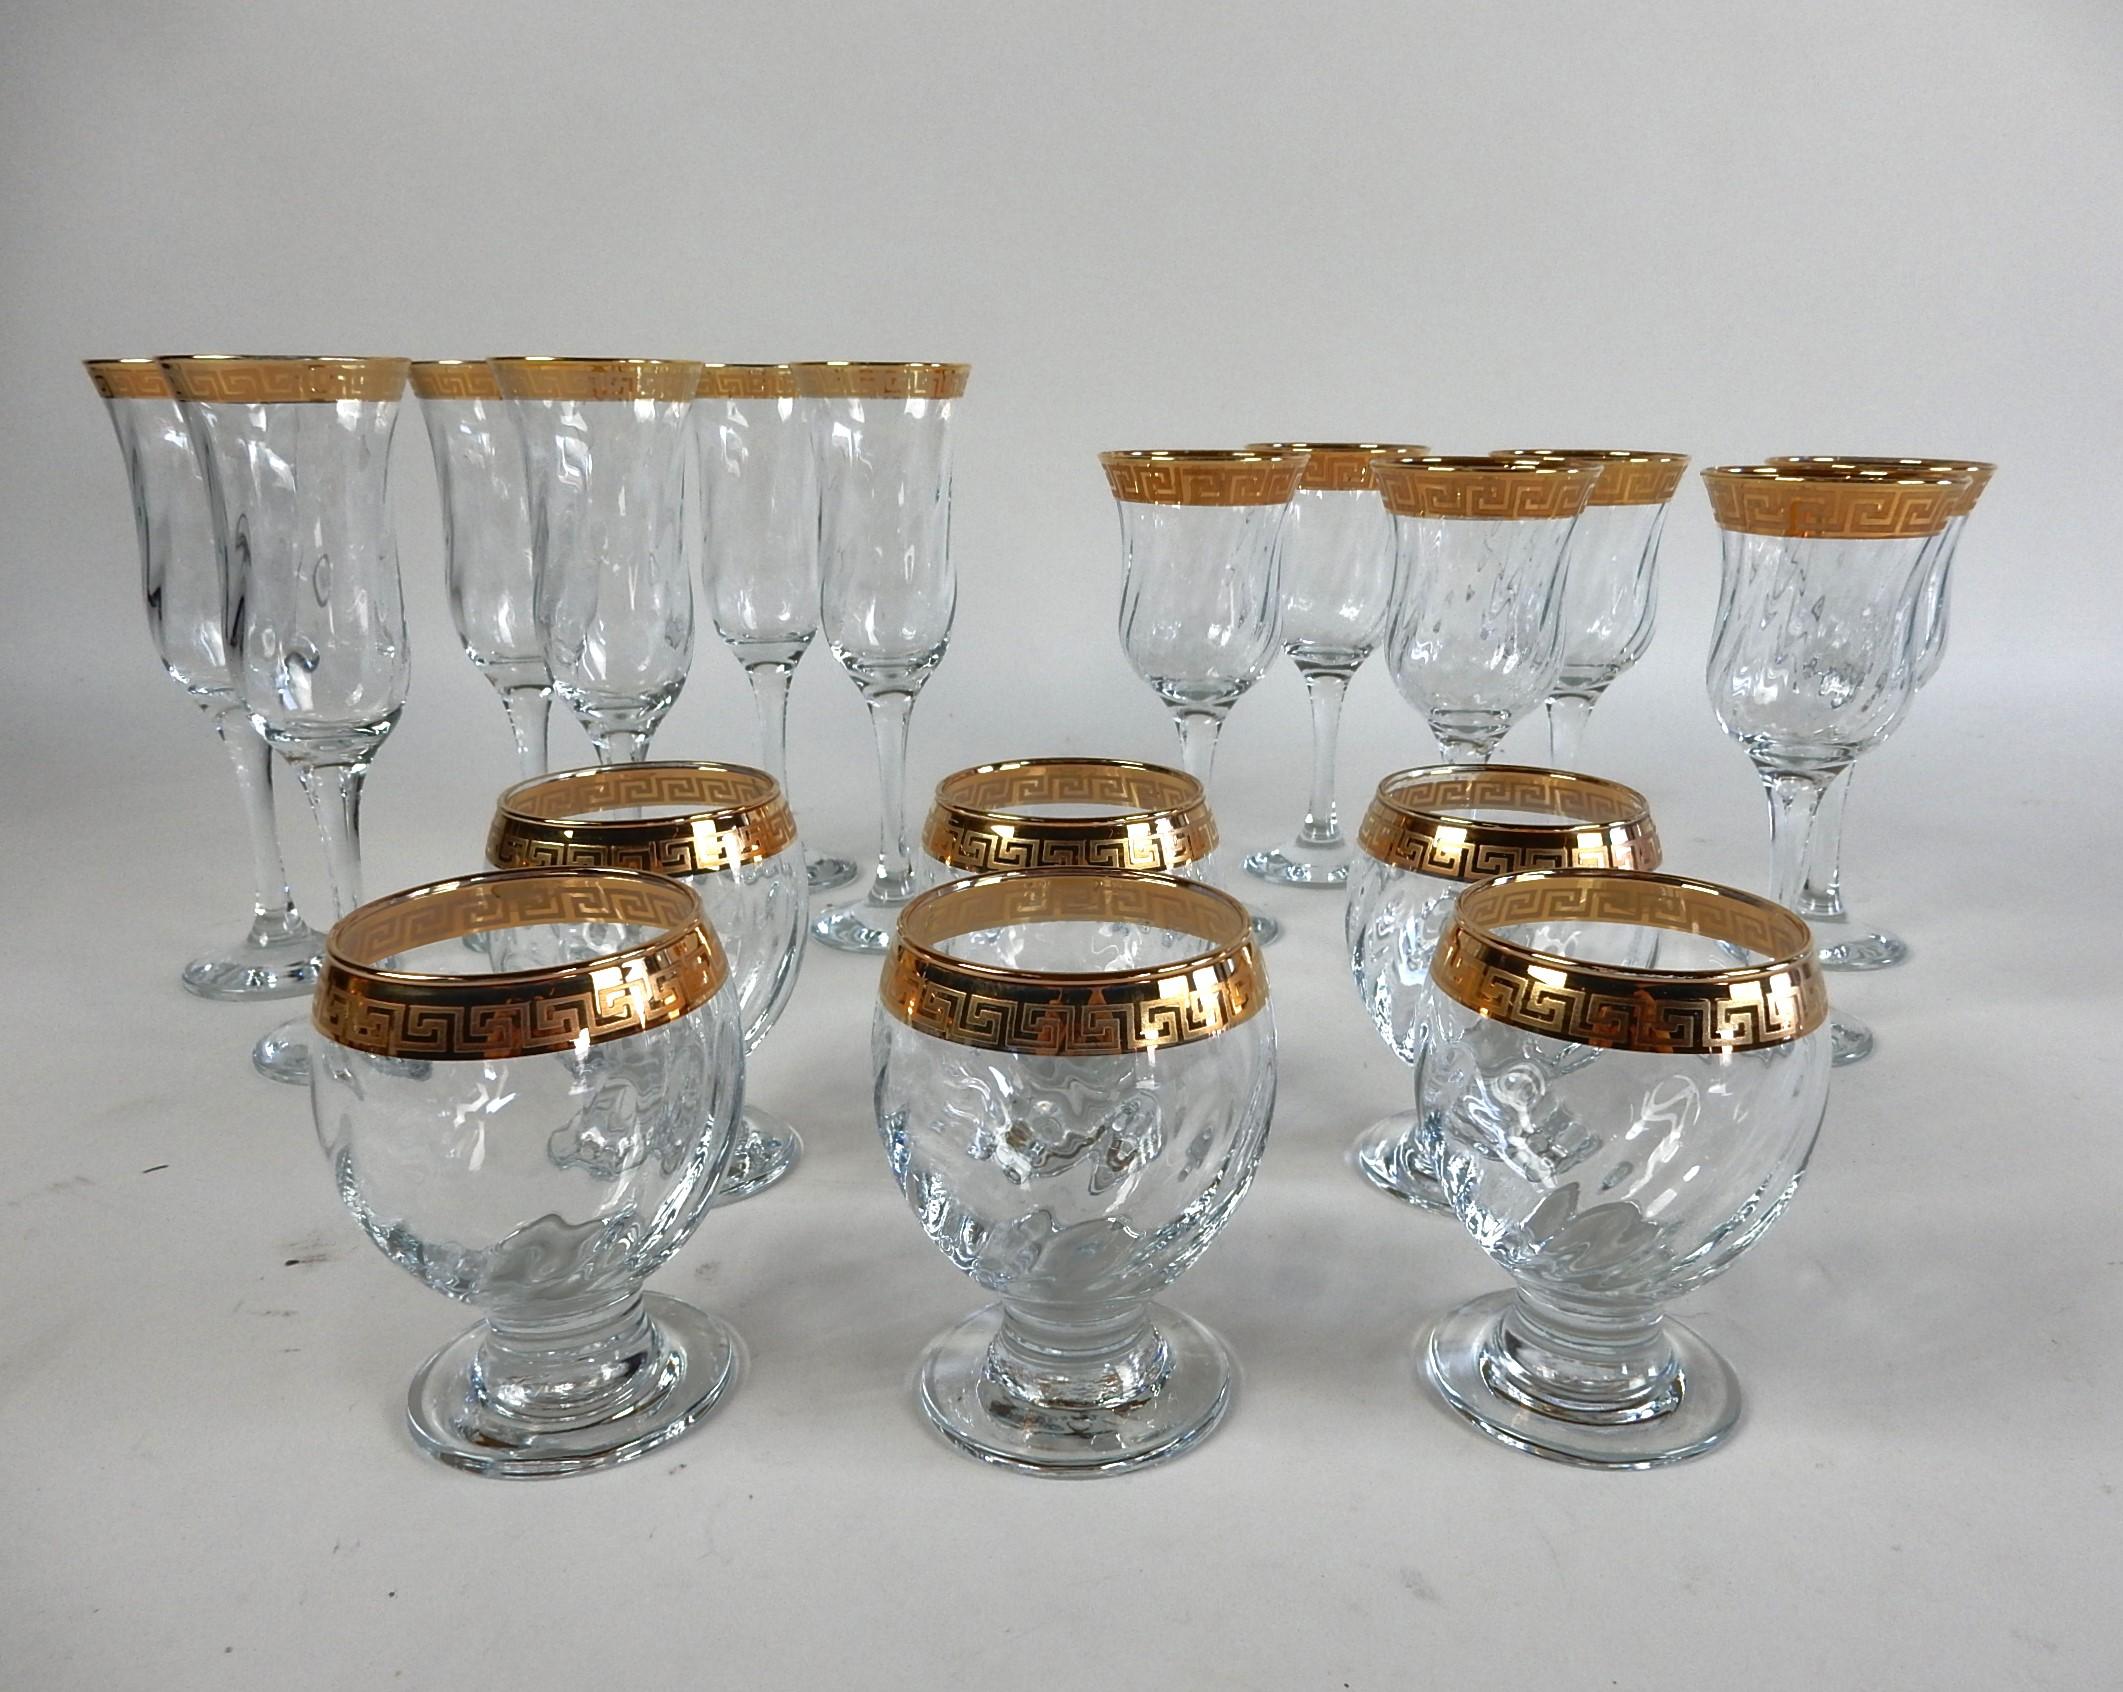 Wunderschönes Set aus 18 Bargläsern mit
goldene Felgen im Greek Key Design.
6 Stück jeder Größe, Champagner, Wein und Eis. 
Unbranded im Stil von Versace.